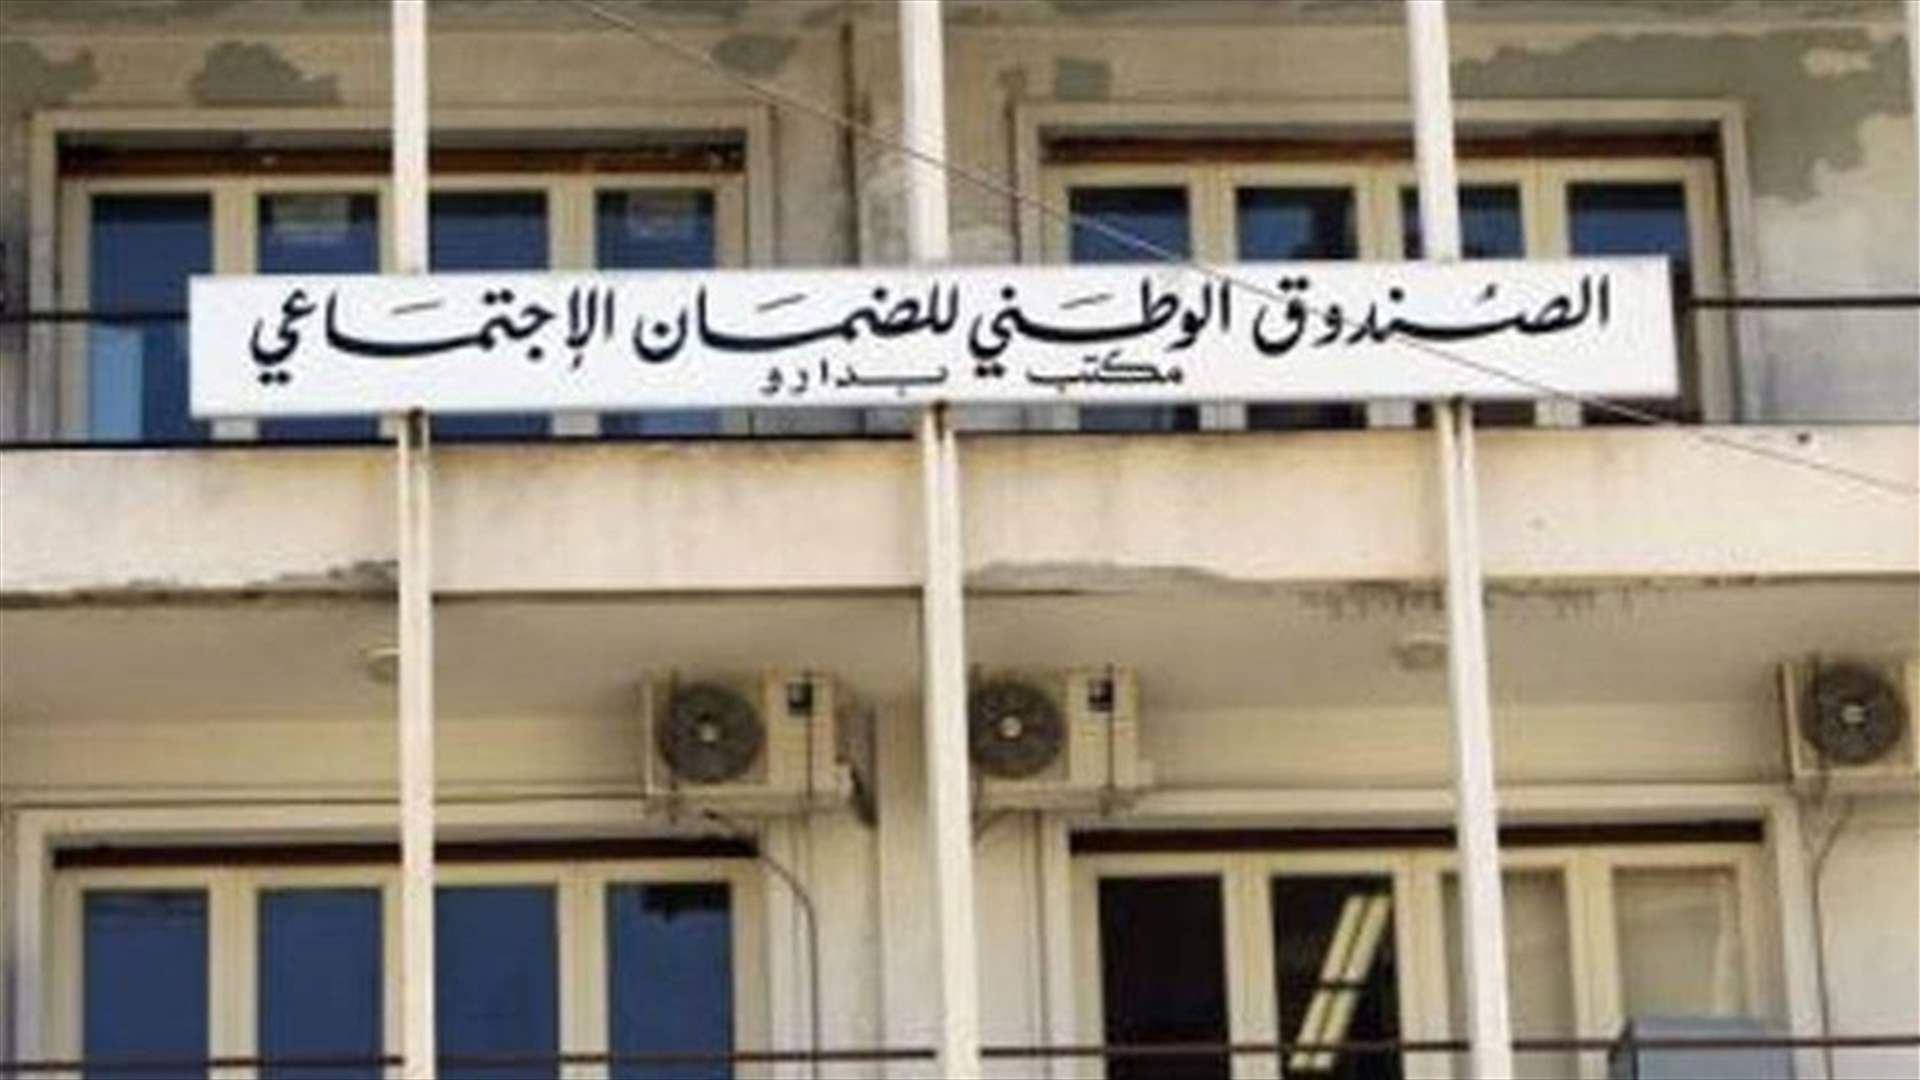 الضمان الاجتماعي يوجه إنذاراً لمستشفى الجامعة الأميركية في بيروت